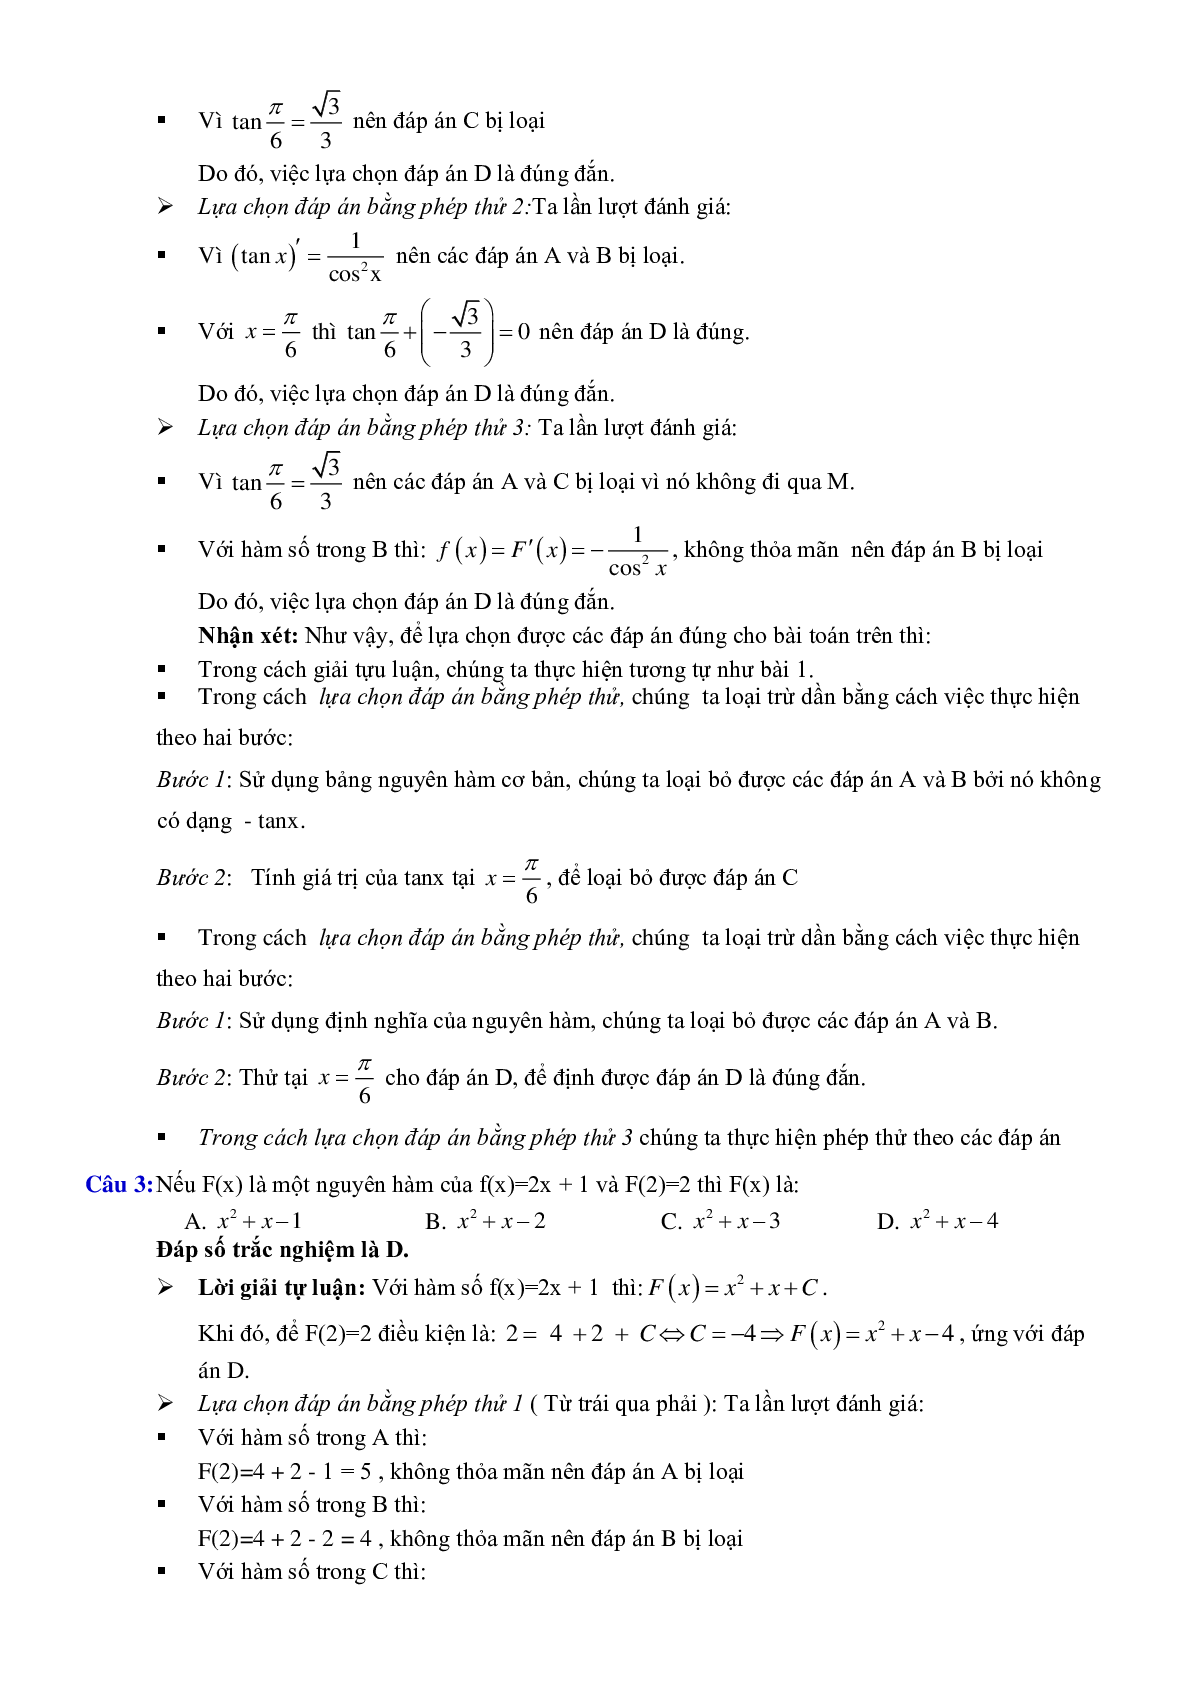 Phương pháp tìm nhanh đáp án trắc nghiệm Nguyên hàm - Tích phân (trang 5)